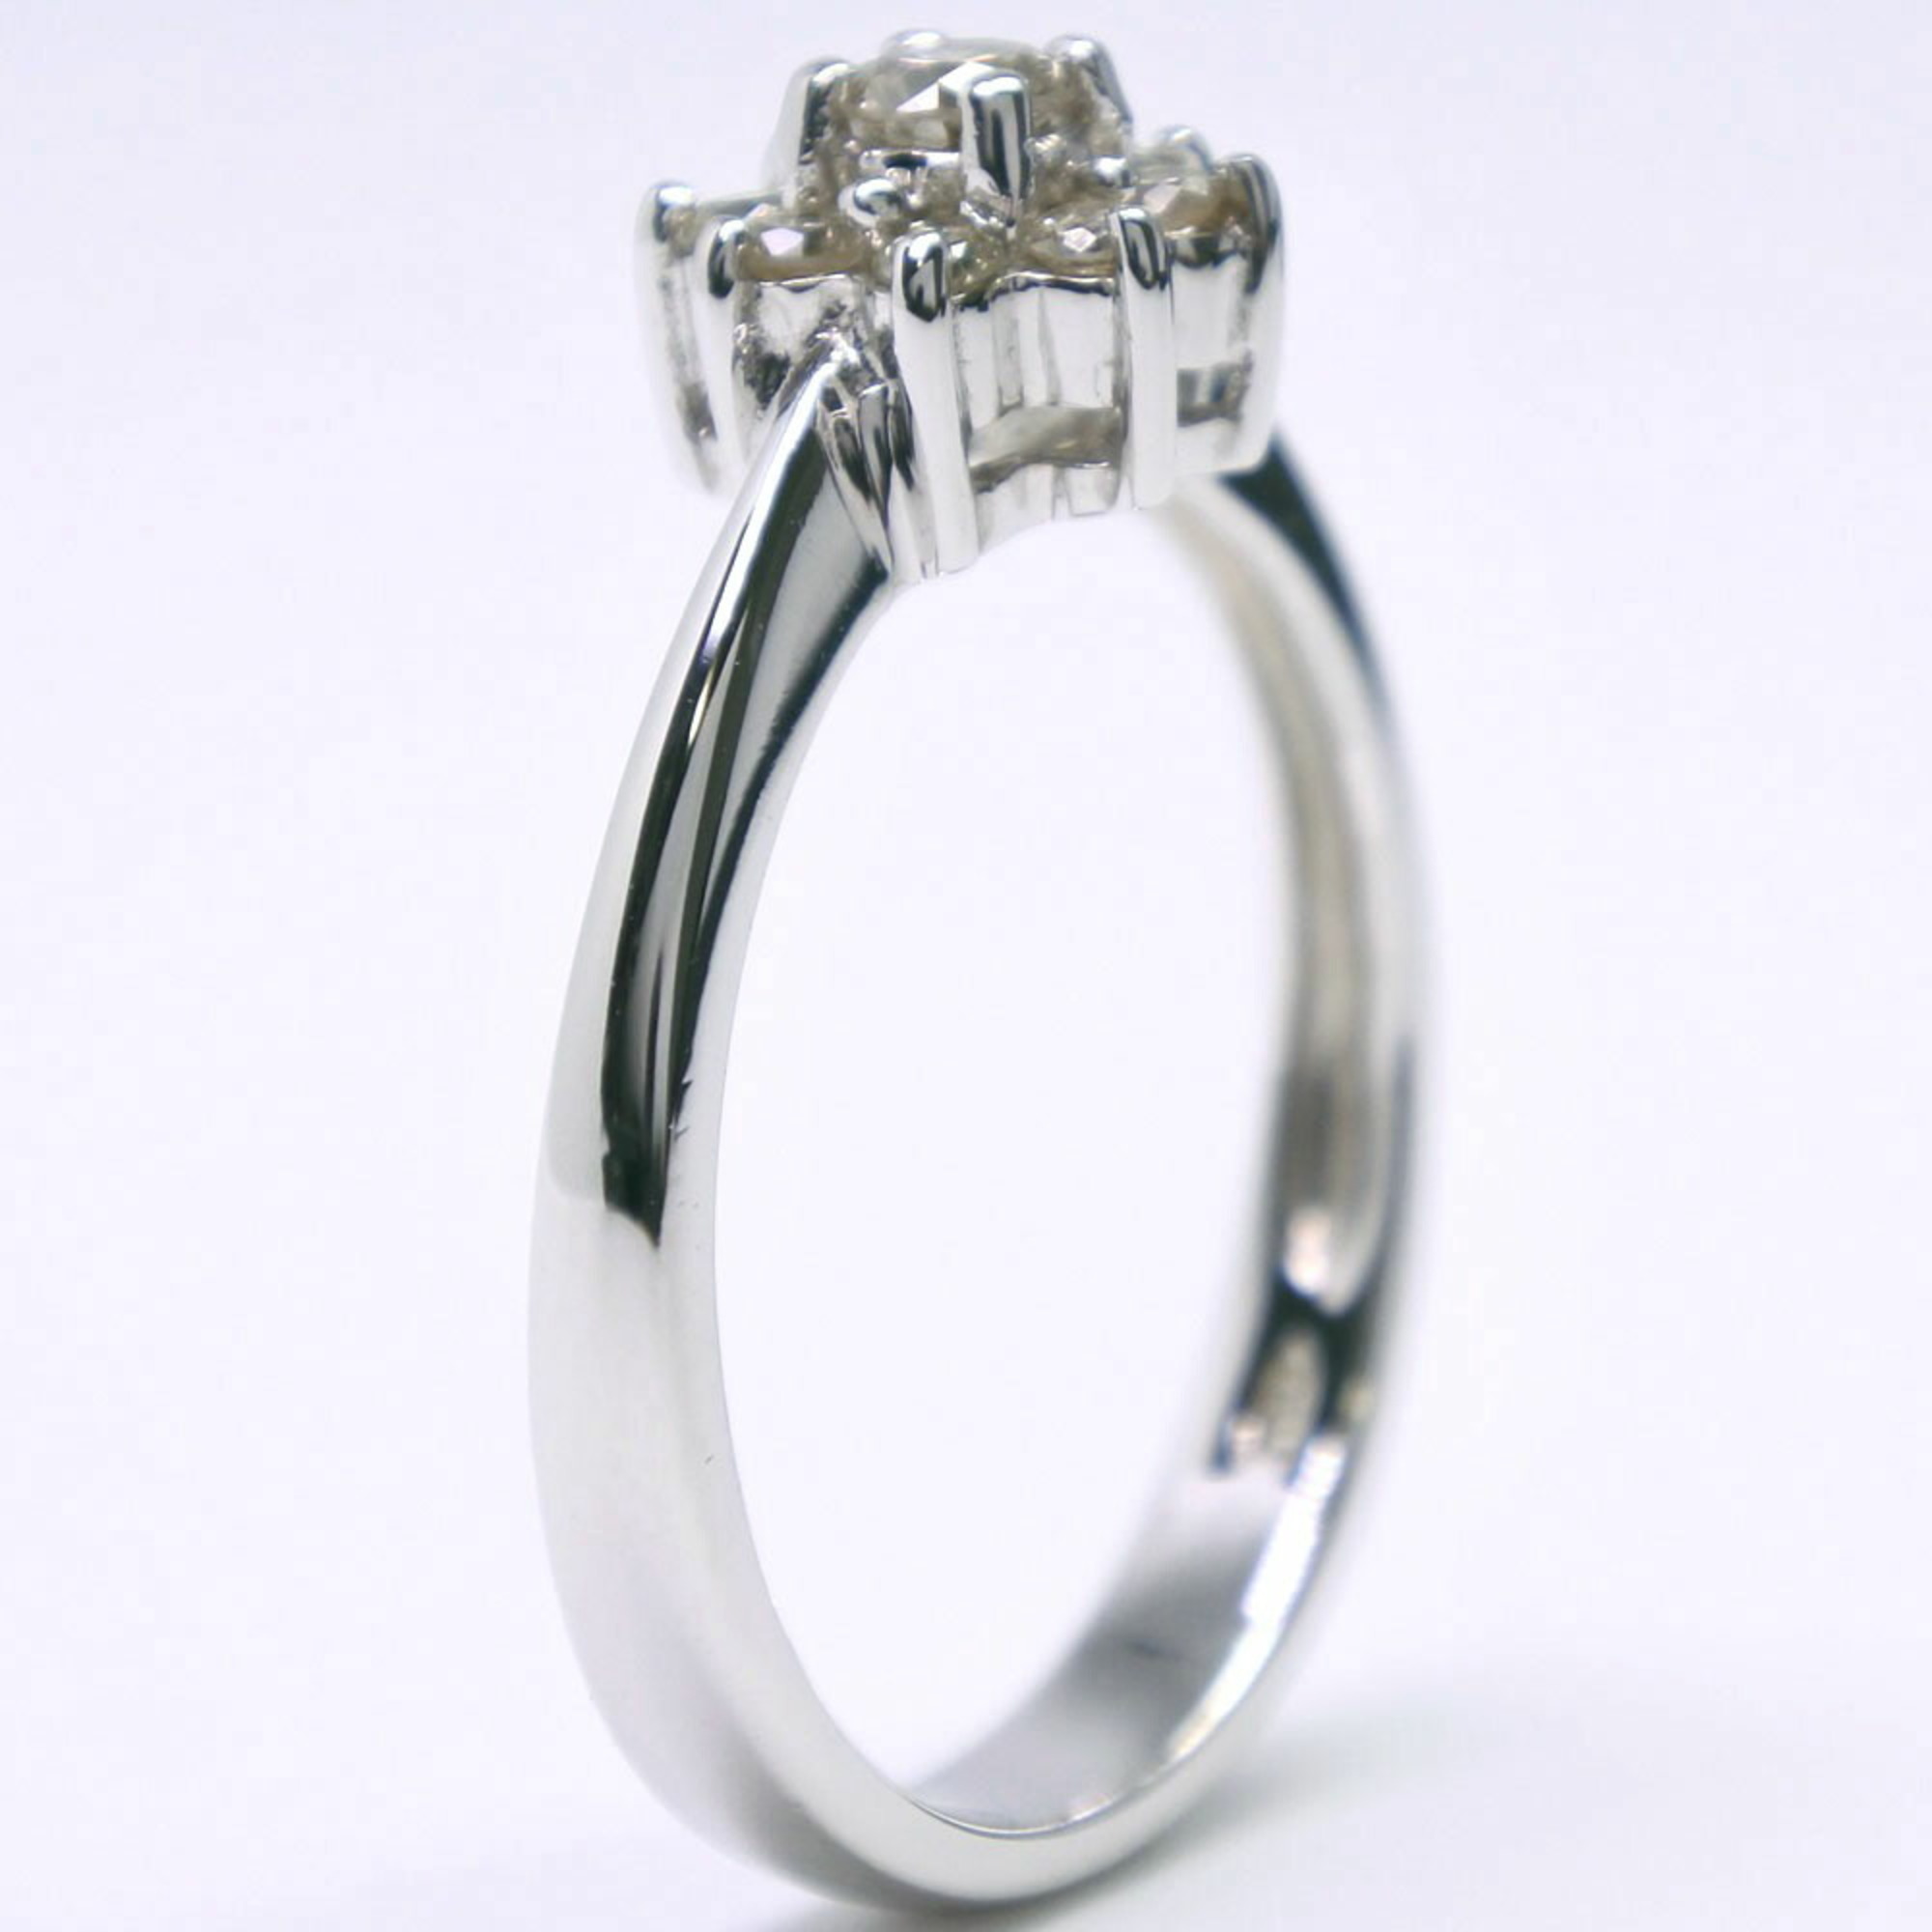 Flower motif ring K18 white gold x diamond approx. 3.2g Women's S